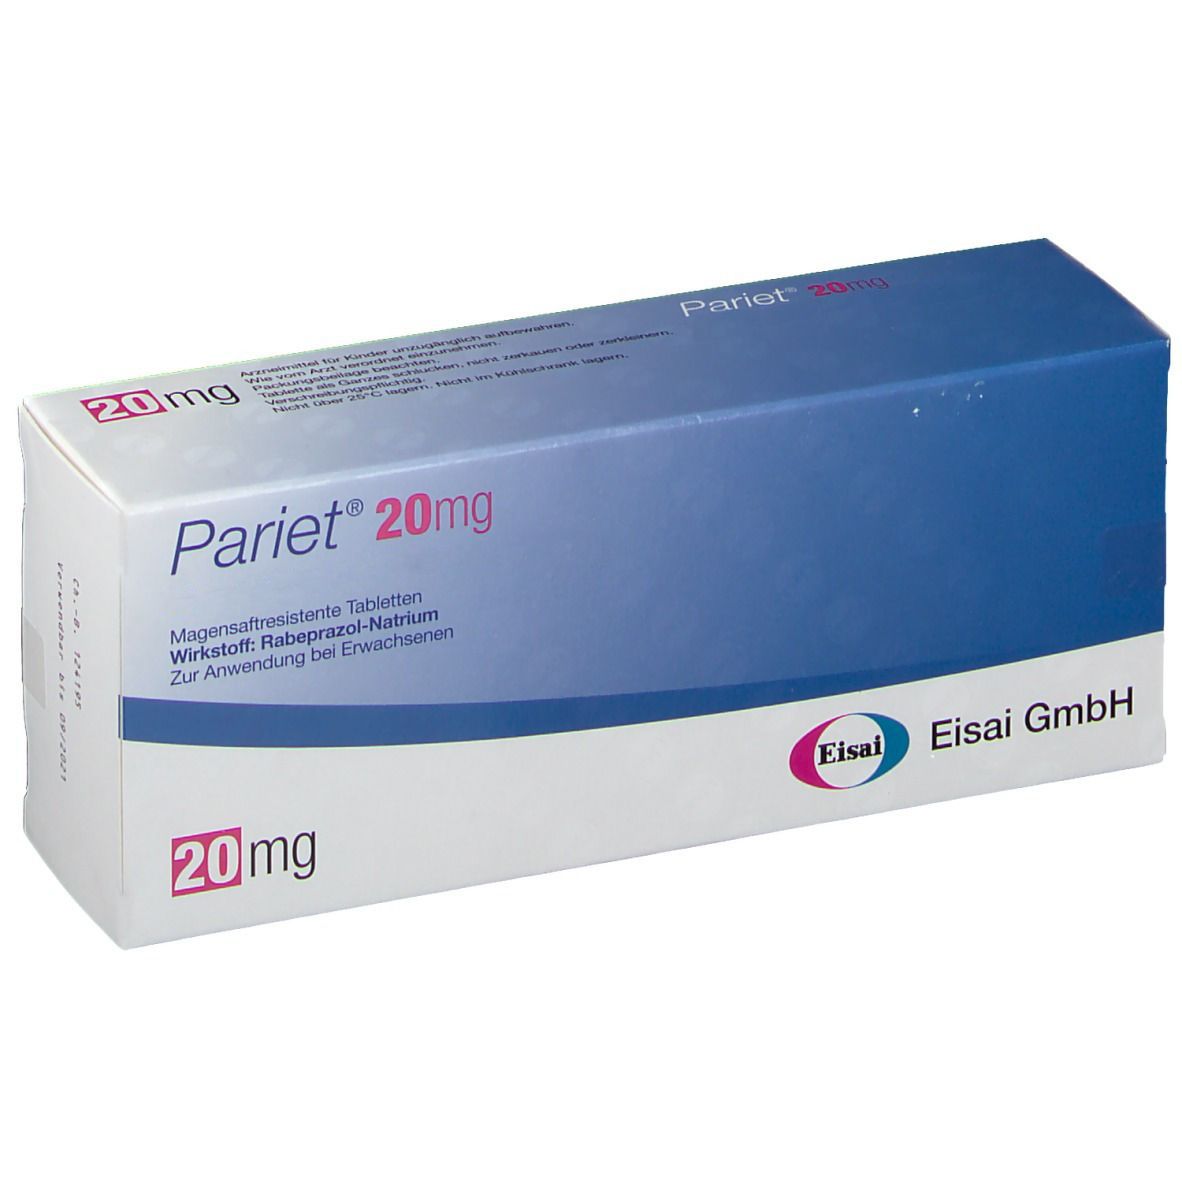 Pariet® 20 mg